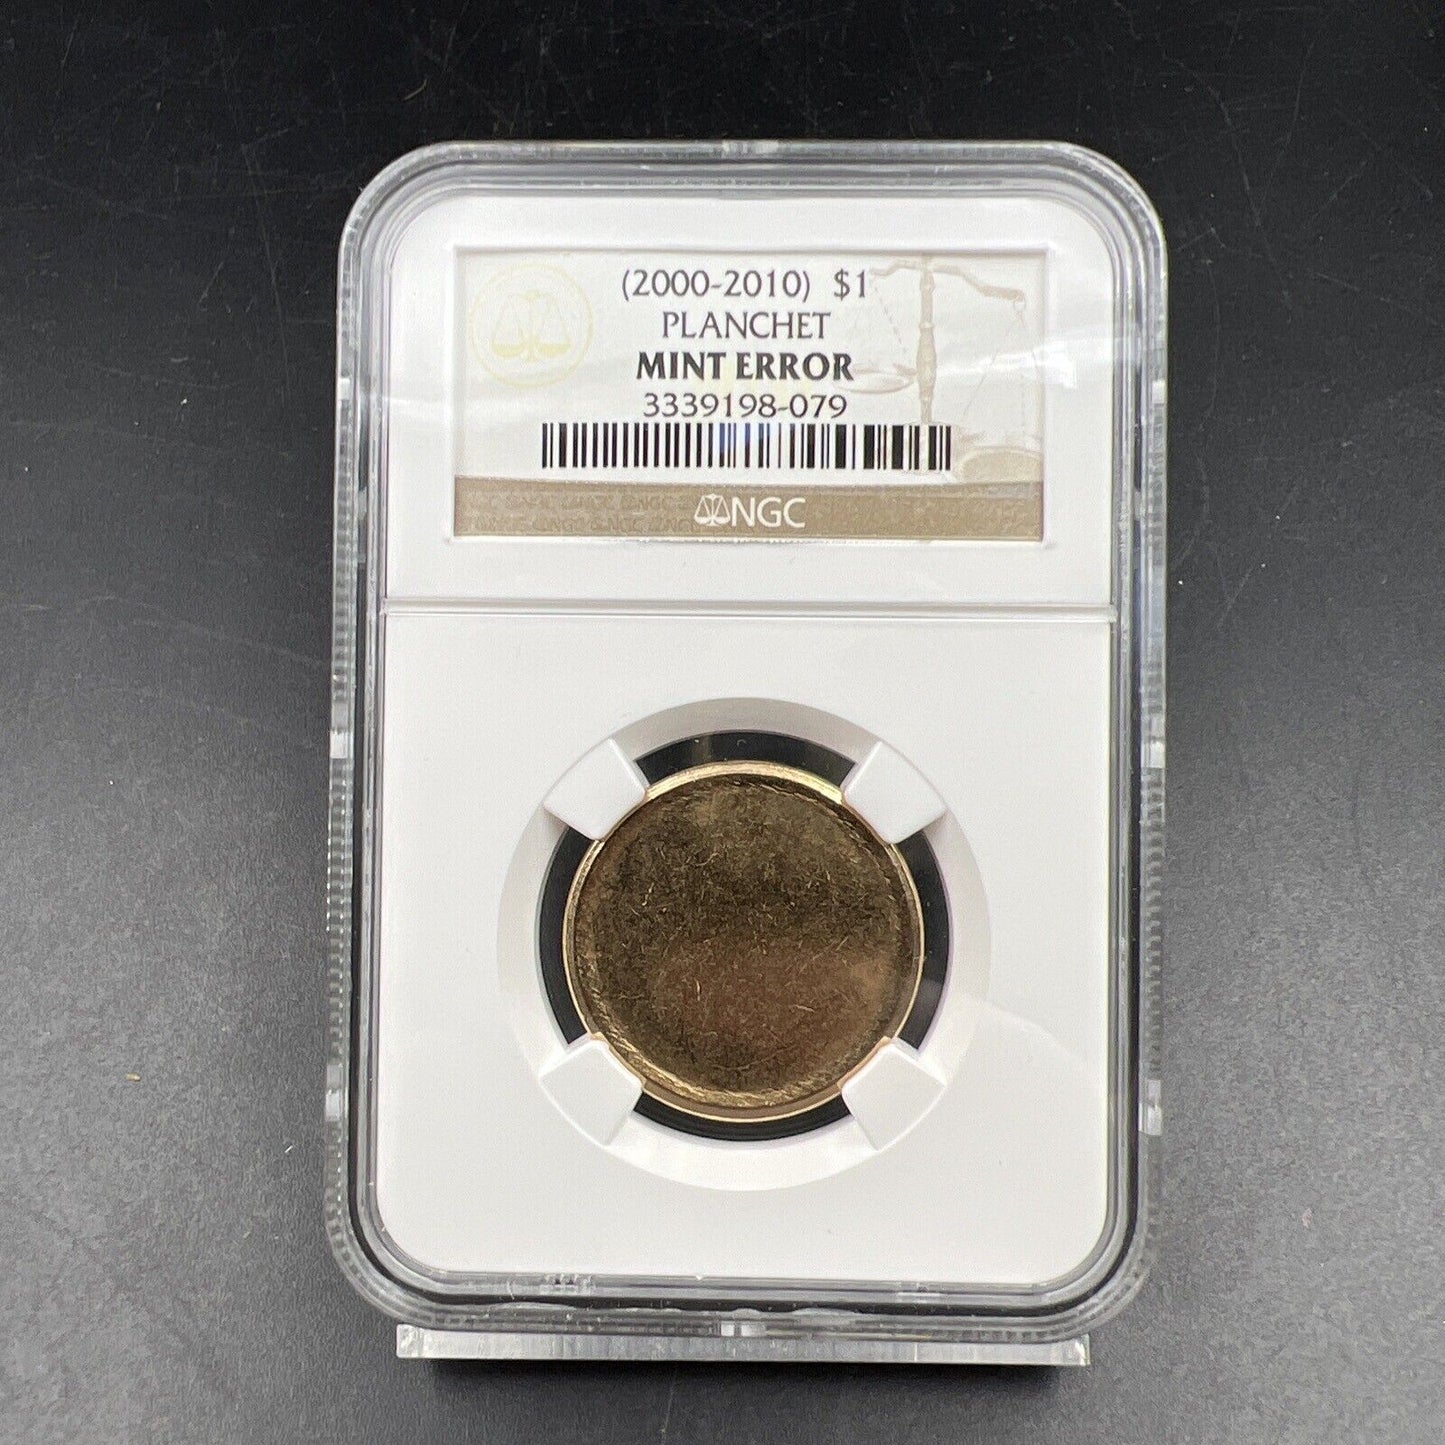 Mint Error 2000-2010 $1 Planchet NGC Blank Brass Dollar CERTIFIED Coin